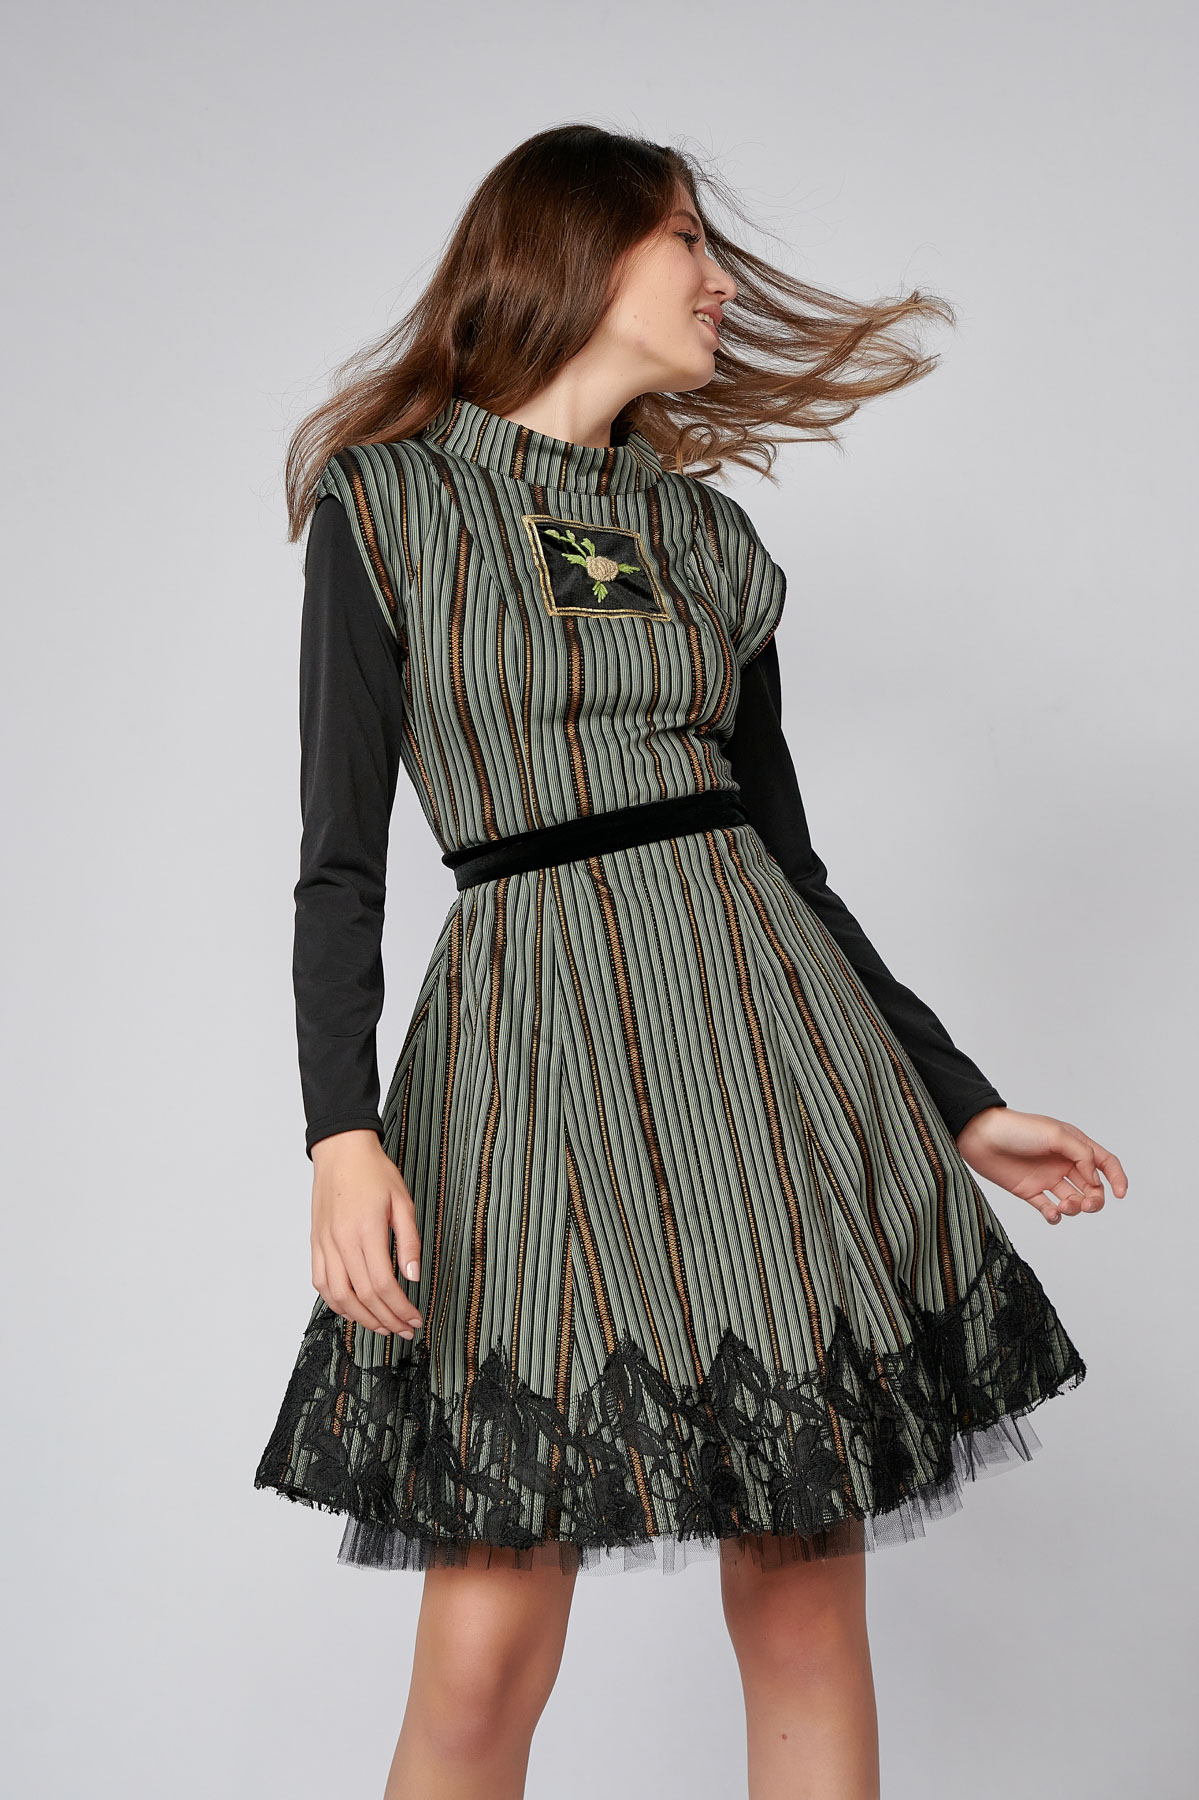 EMILY Dress. Natural fabrics, original design, handmade embroidery